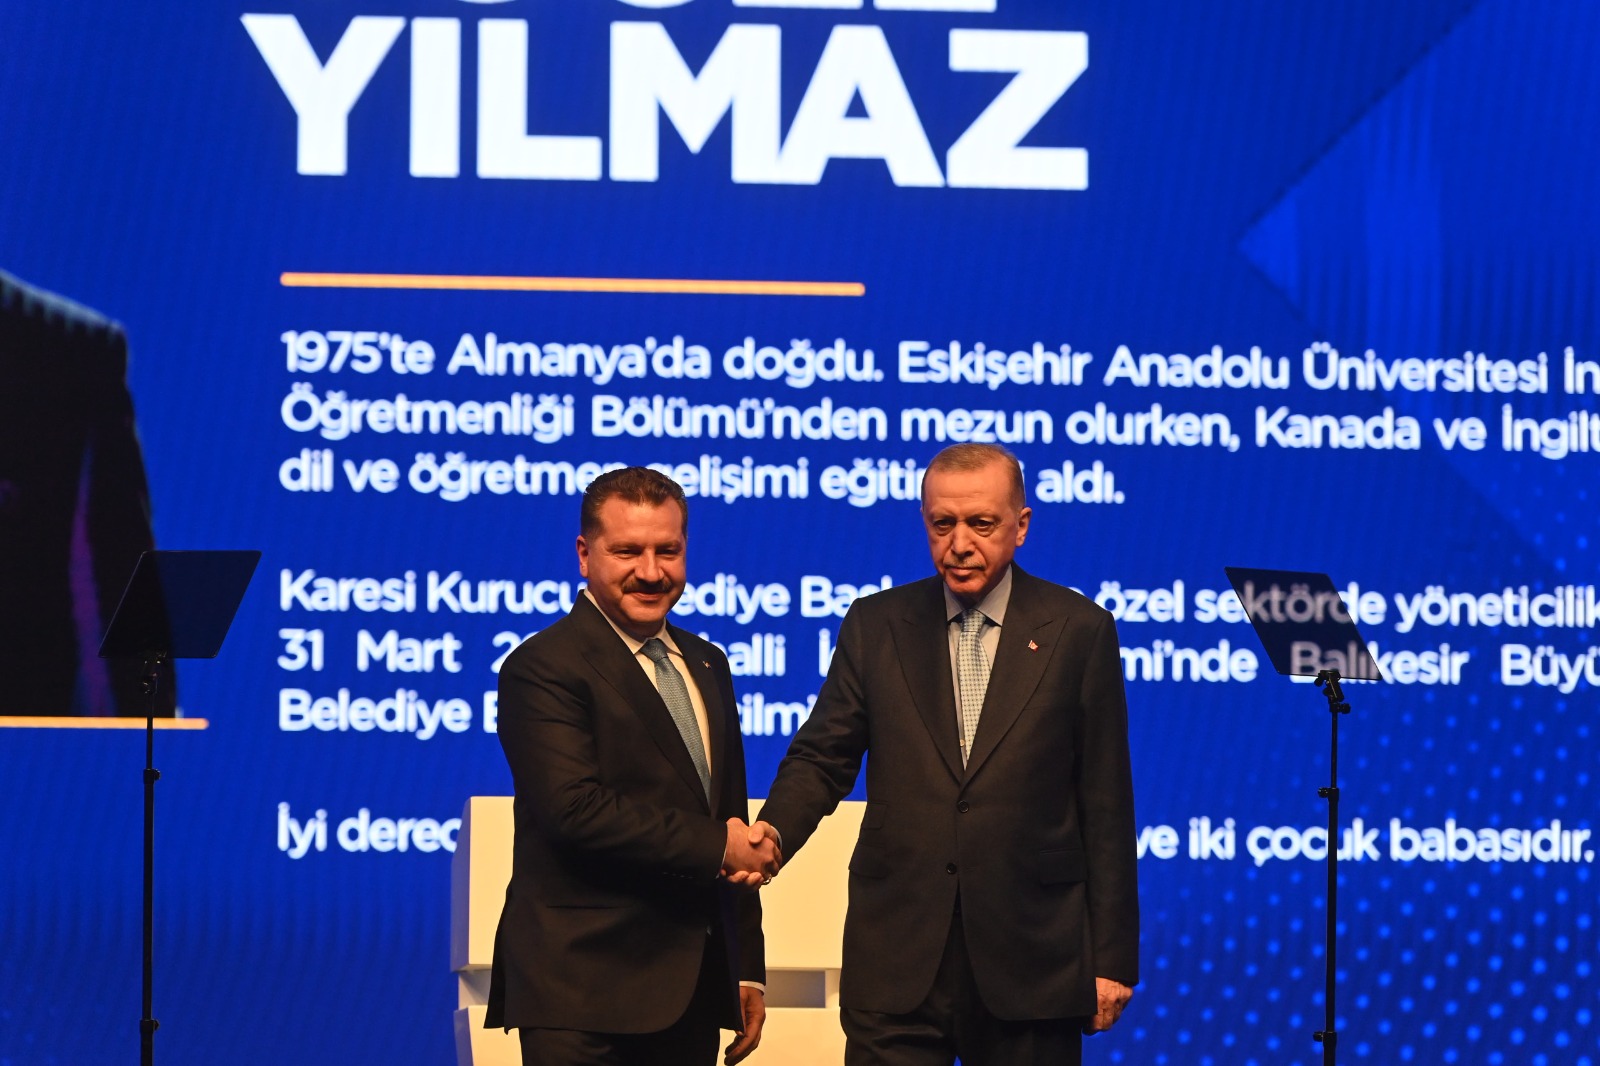 Cumhurbaşkanı, AK Parti Genel Başkanı Sayın Recep Tayyip Erdoğan, Kuva-yi Milliye şehri Balıkesir’in Cumhur İttifakı adayının Yücel Yılmaz olduğunu açıkladı.